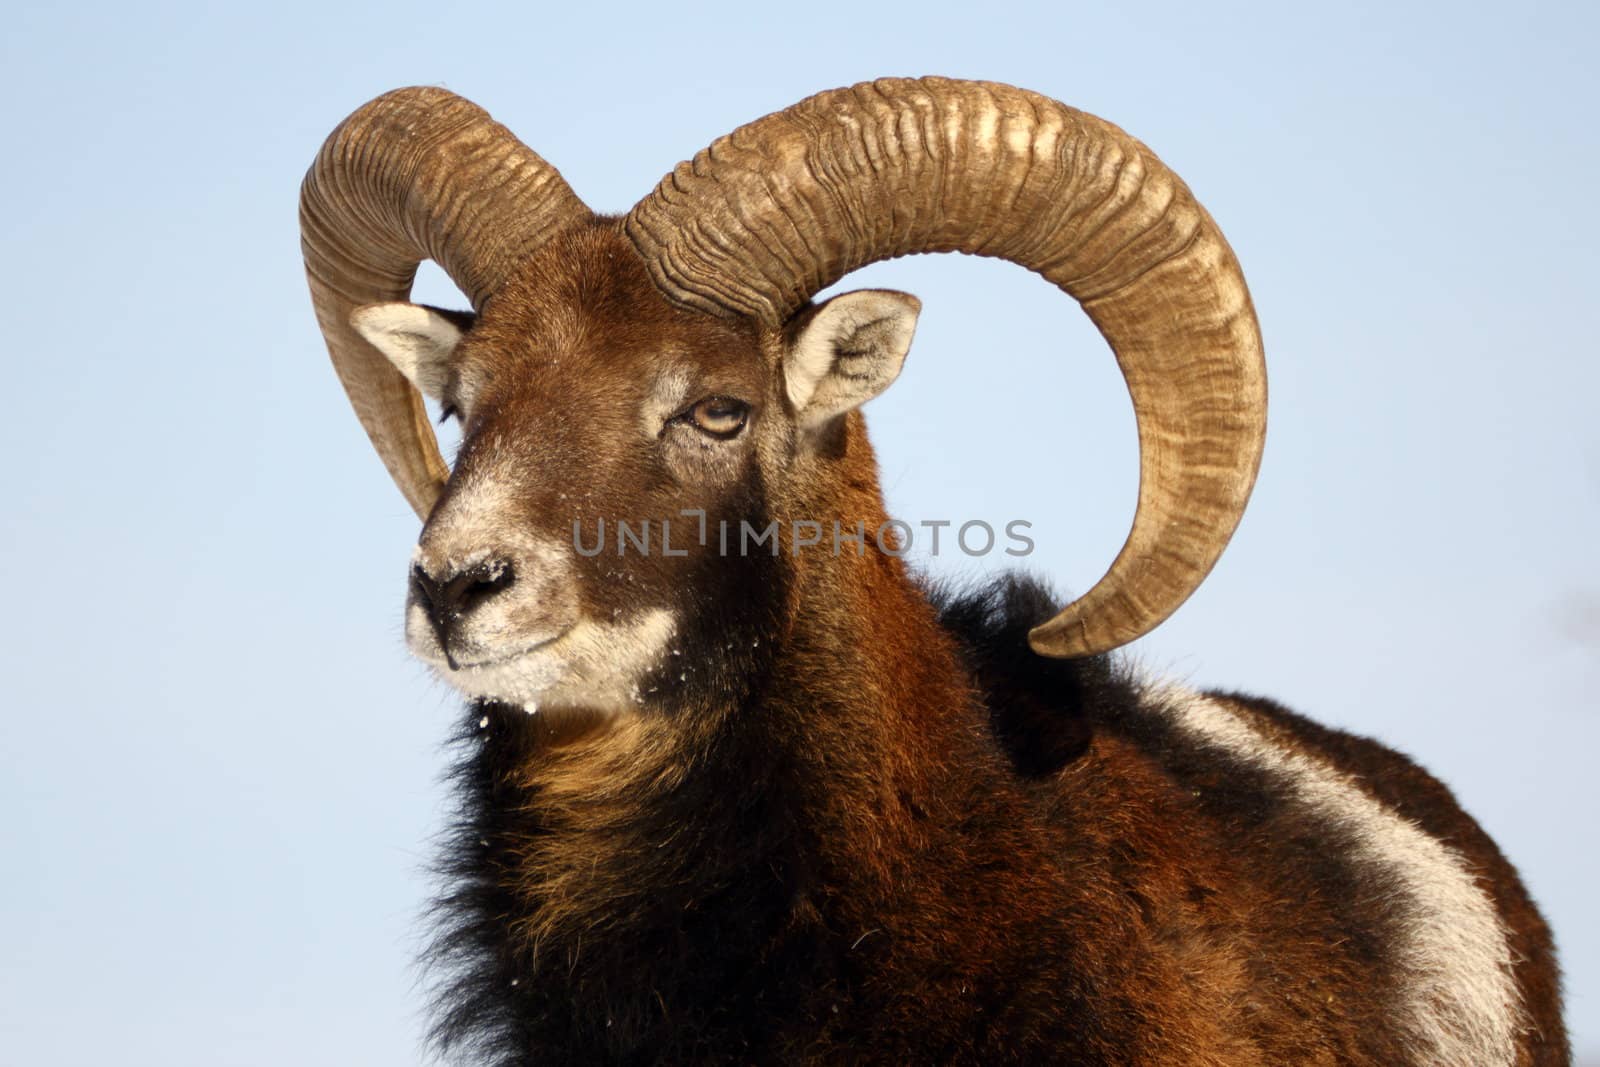 mouflon trophy by taviphoto